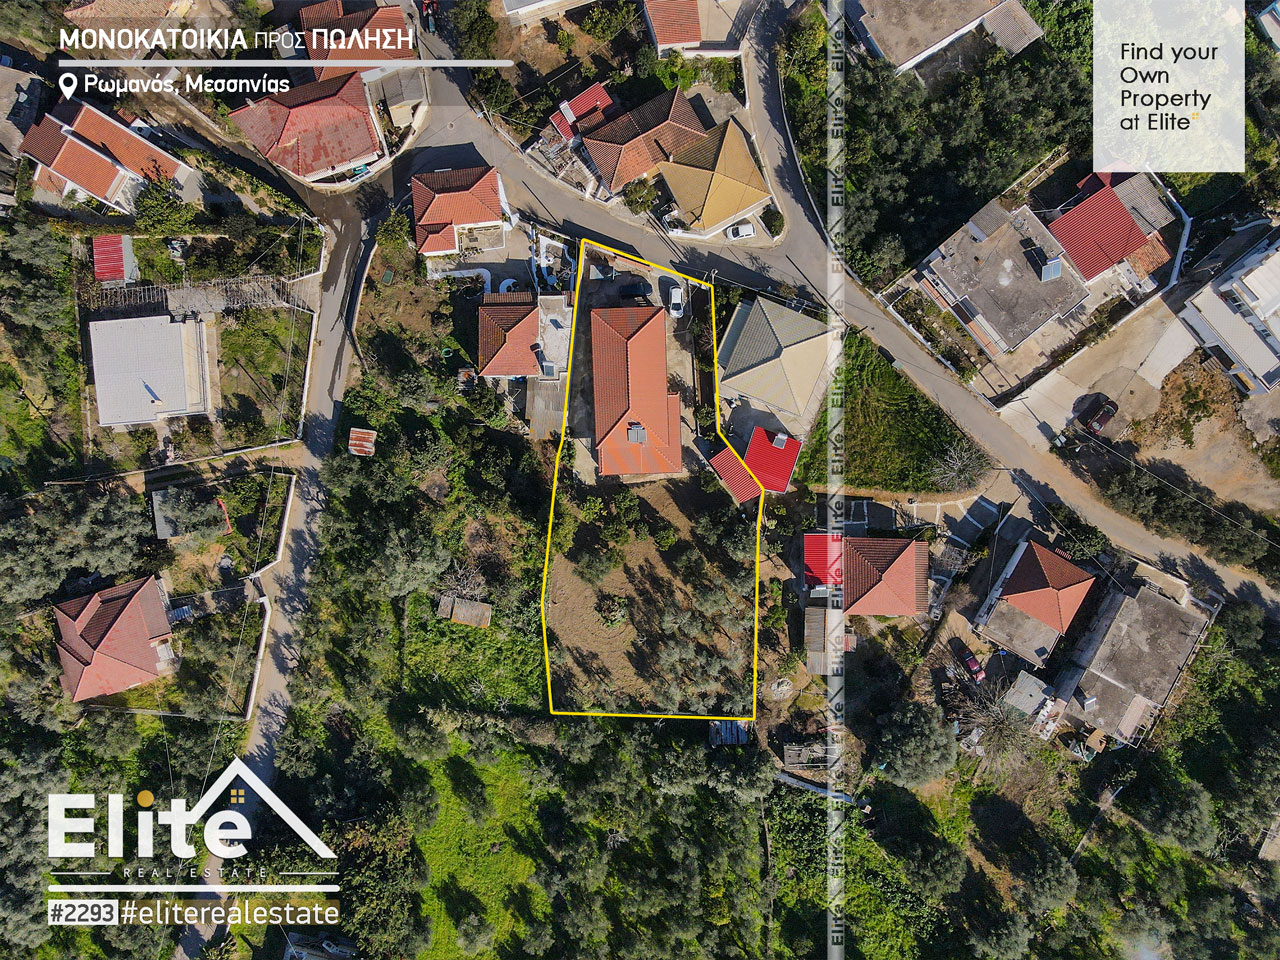 Sprzedaż, dom wolnostojący w Romanos Pylos Nestoros #2293 | ELITE REAL ESTATE